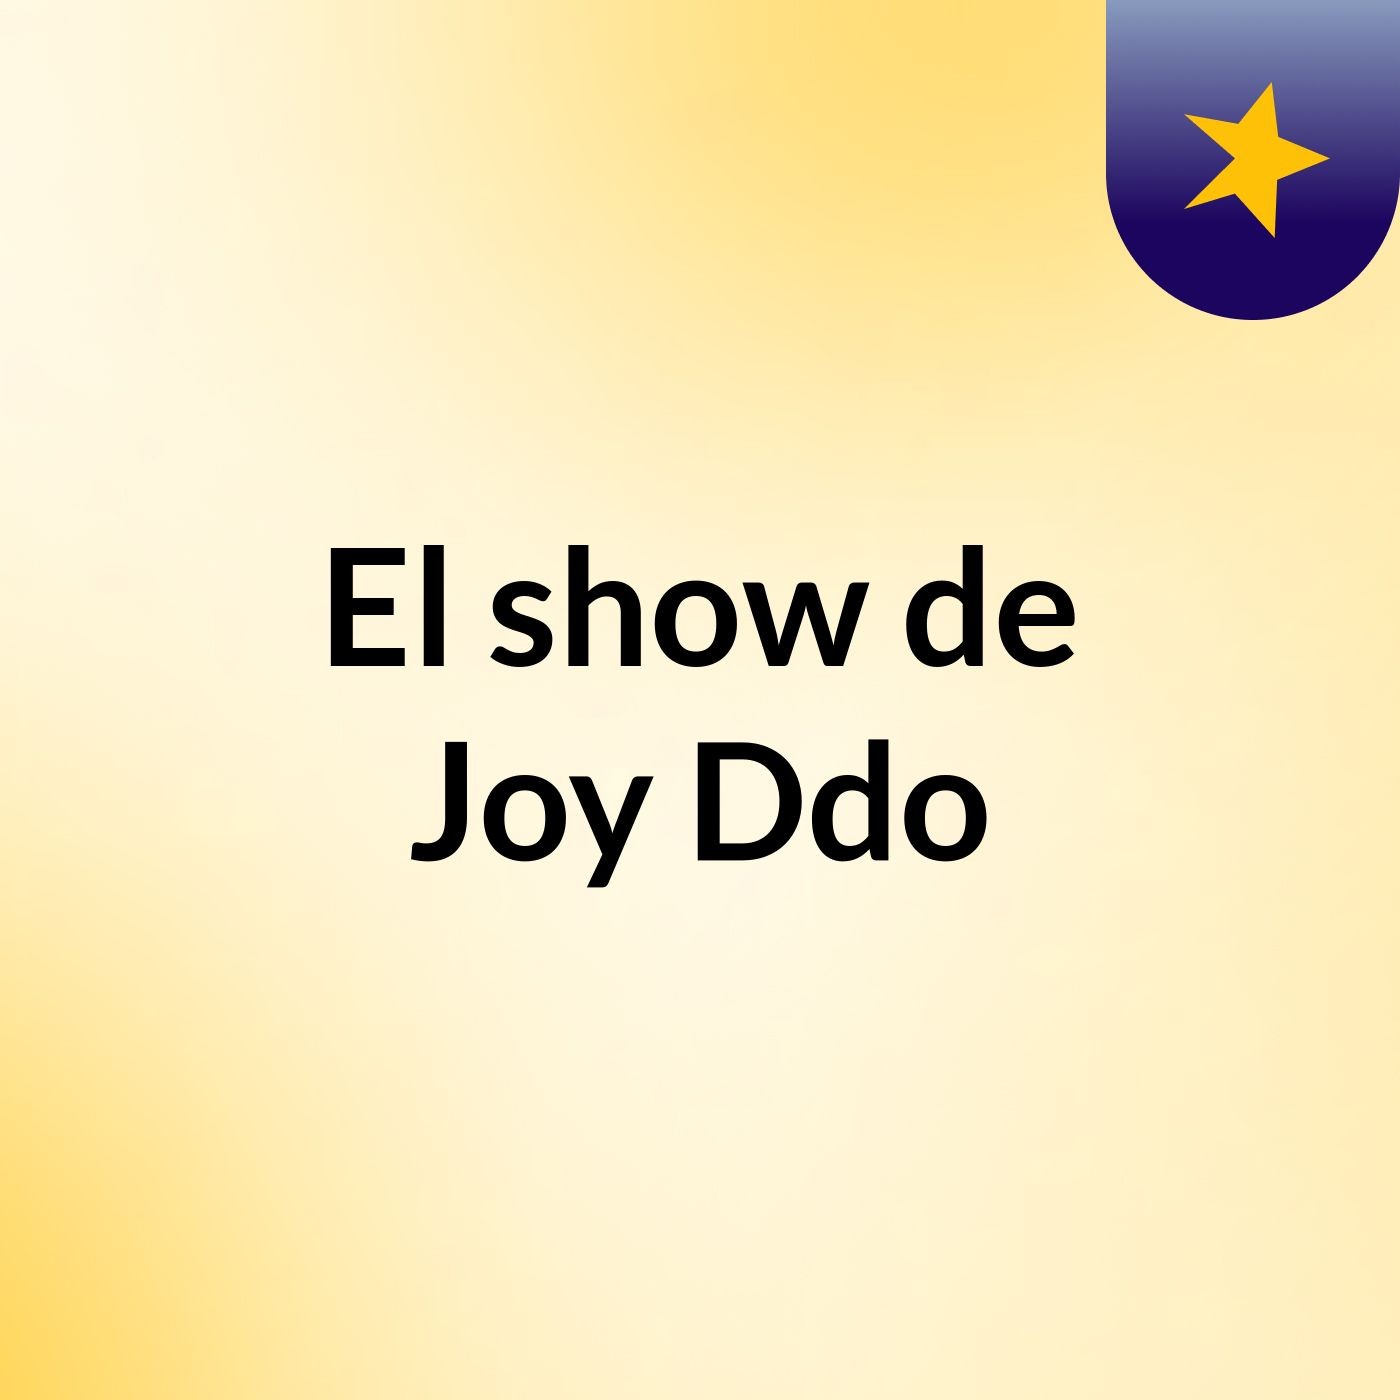 El show de Joy Ddo